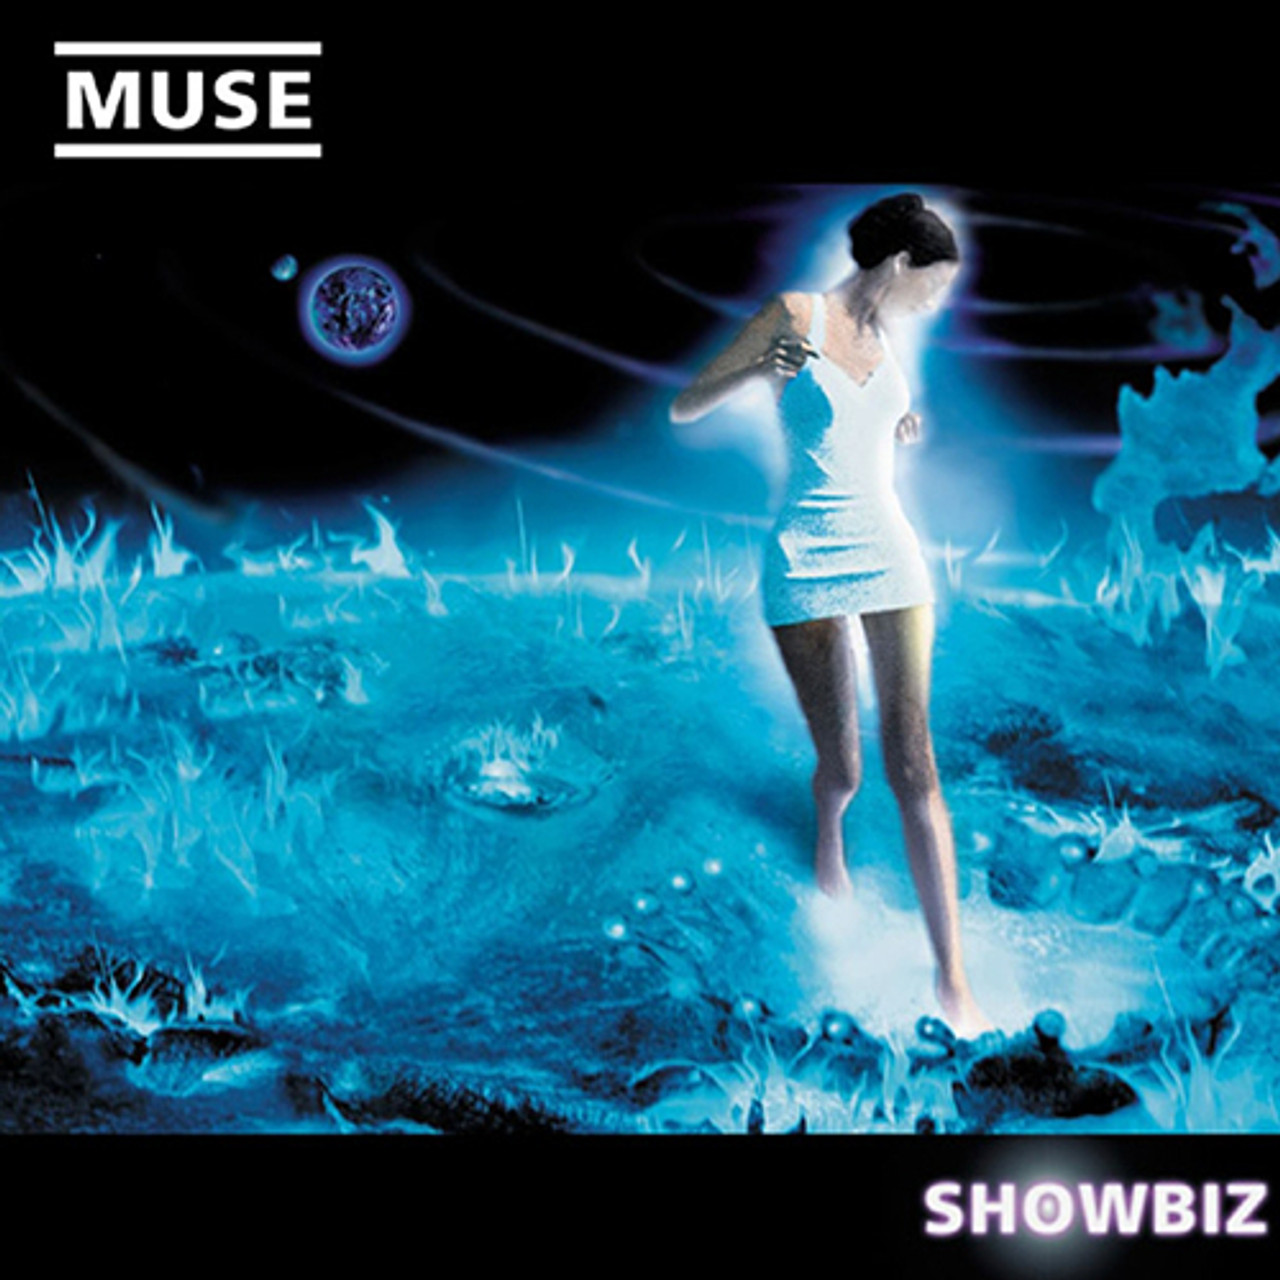 Muse - Showbiz (Vinyl 2LP) - Music Direct